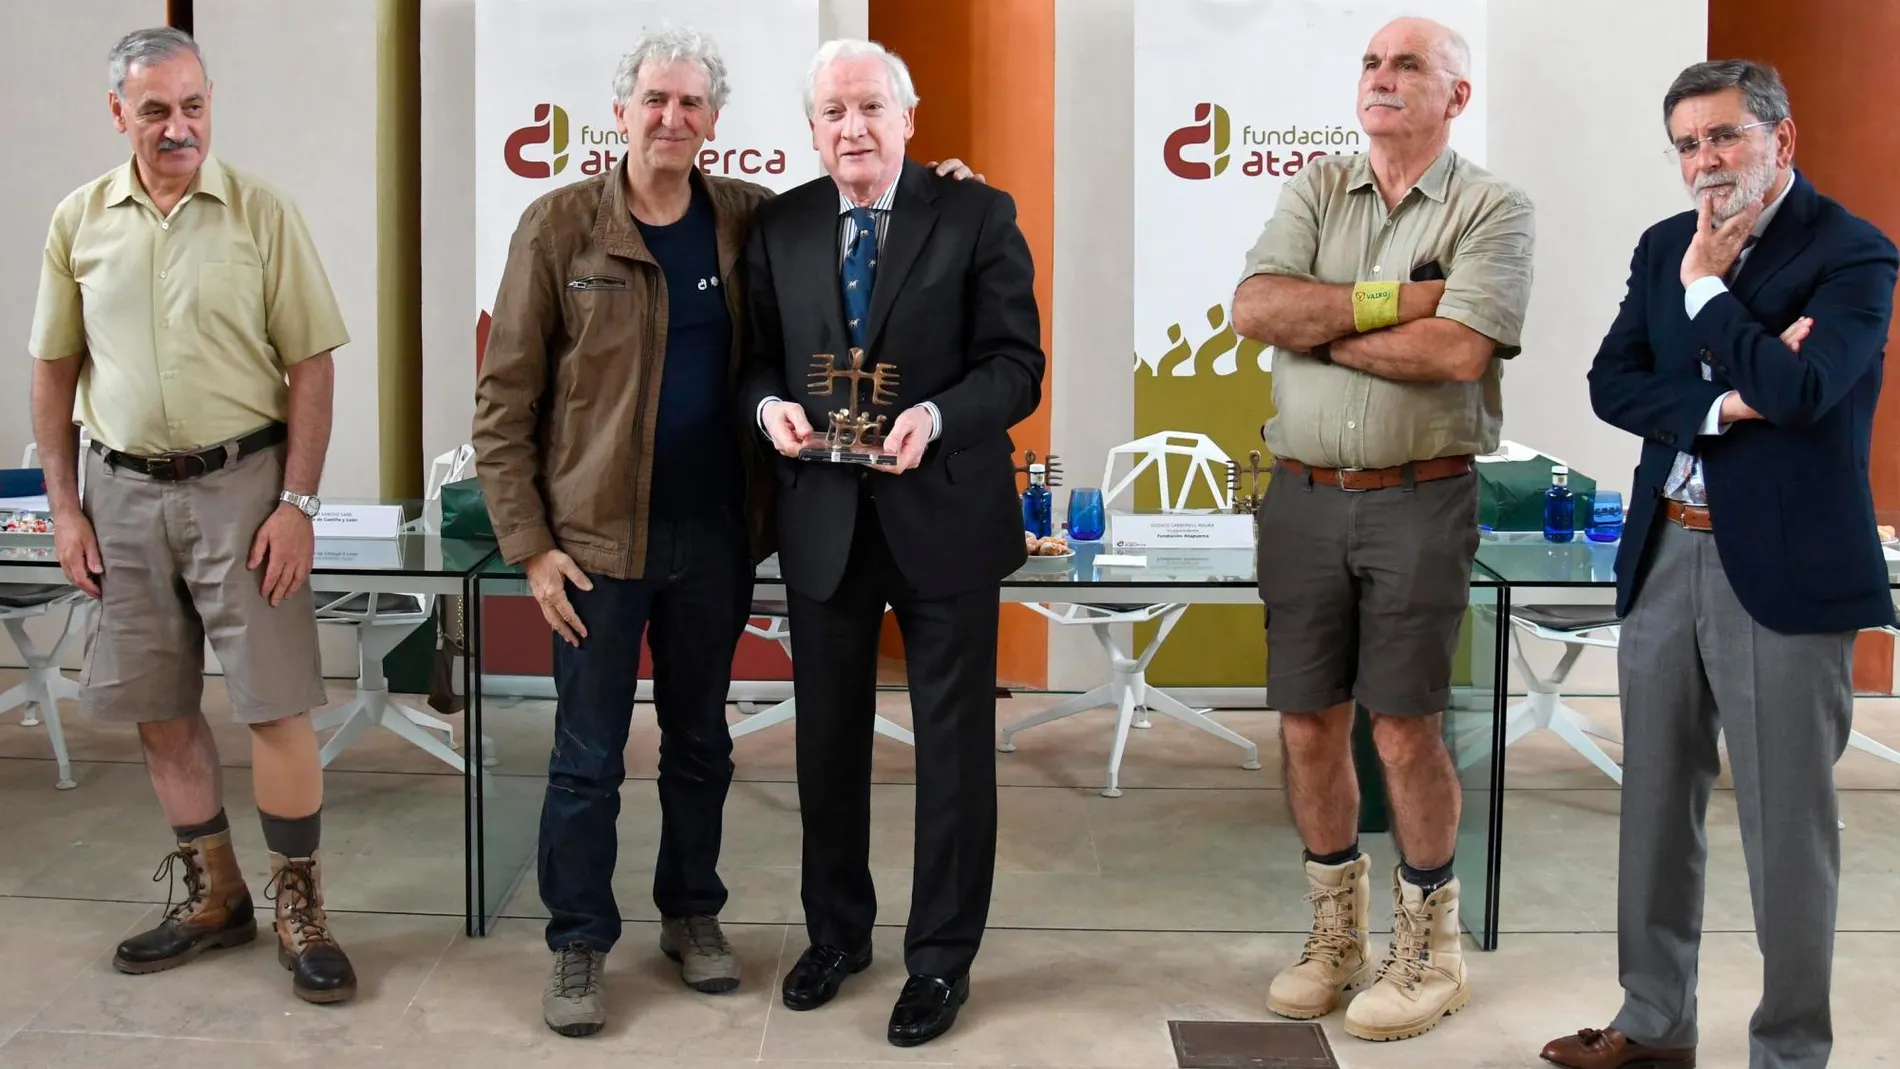 El presidente de la Fundación Atapuerca, Antonio Méndez Pozo, recibe el homenaje como patrono de manos de los tres coodirectores del yacimiento